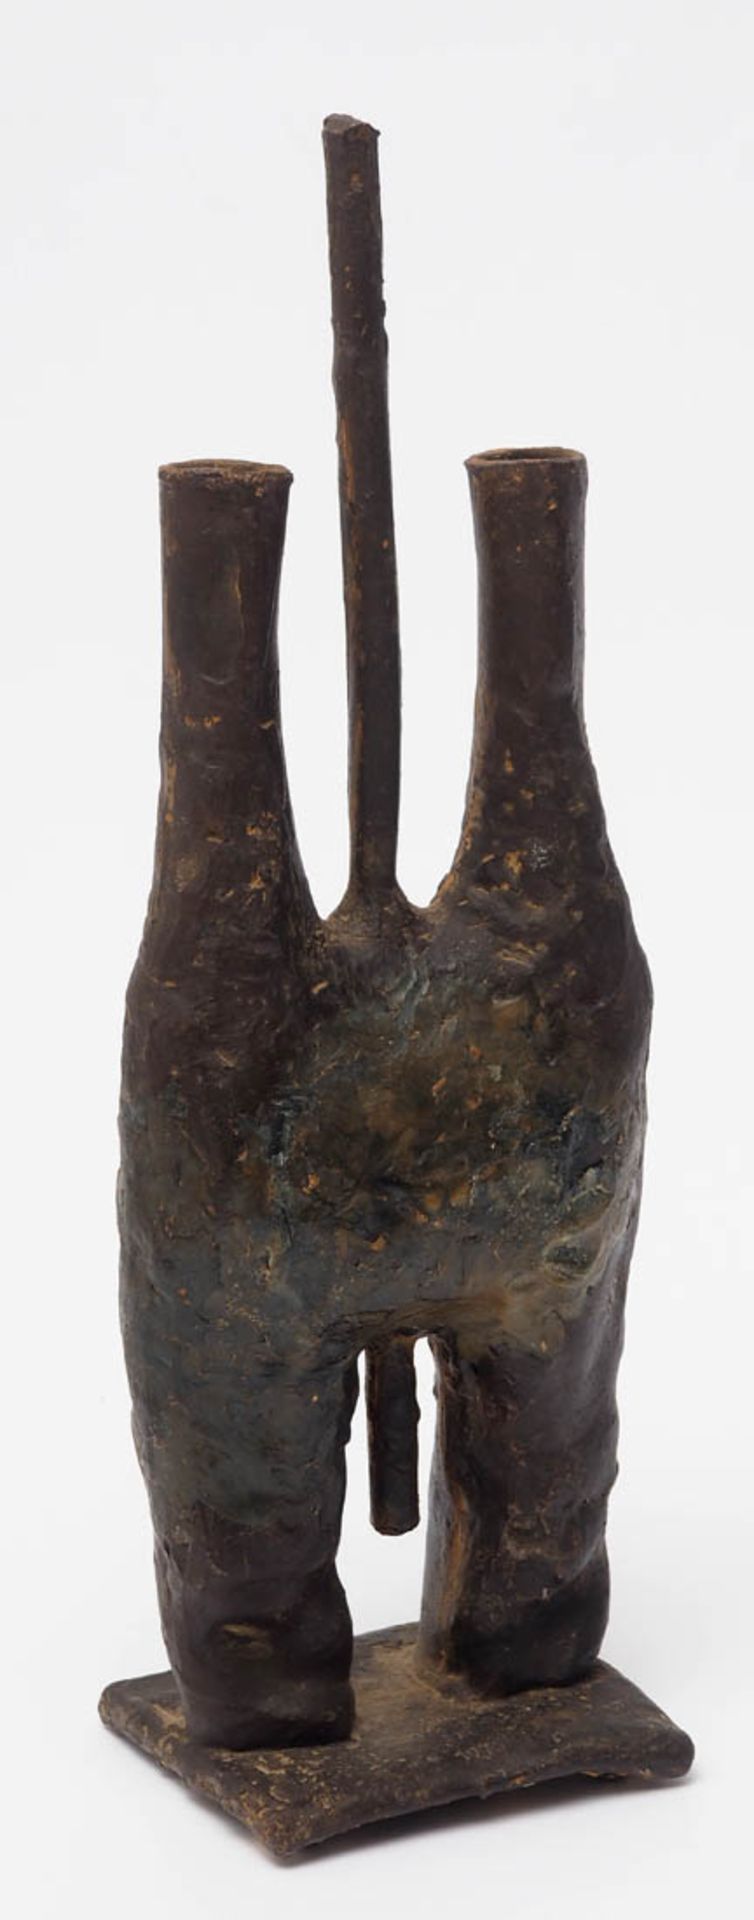 Unbekannter Künstler Abstrakte Komposition auf rechteckigem Sockel. Bronze, braun patiniert. H.